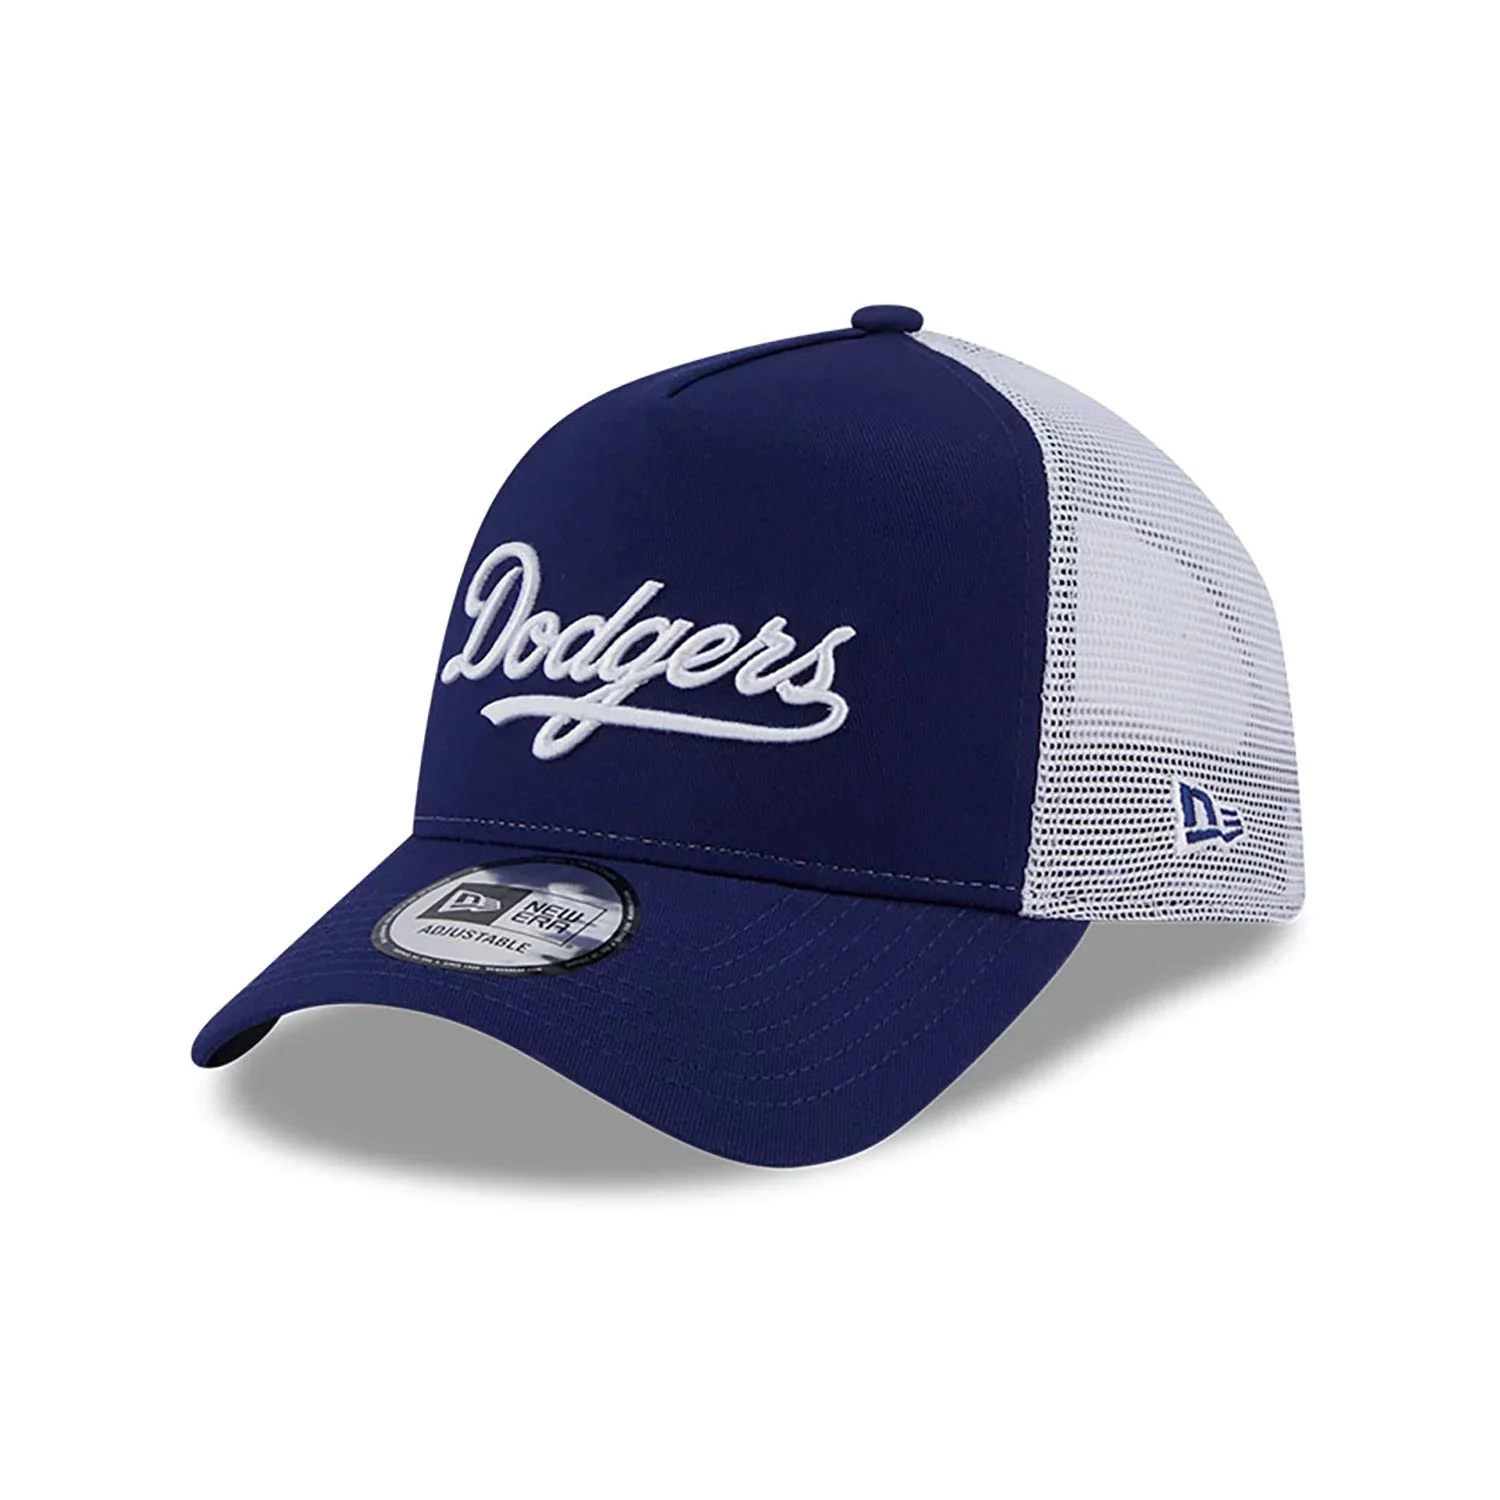 LA Dodgers Team Script Trucker Cap